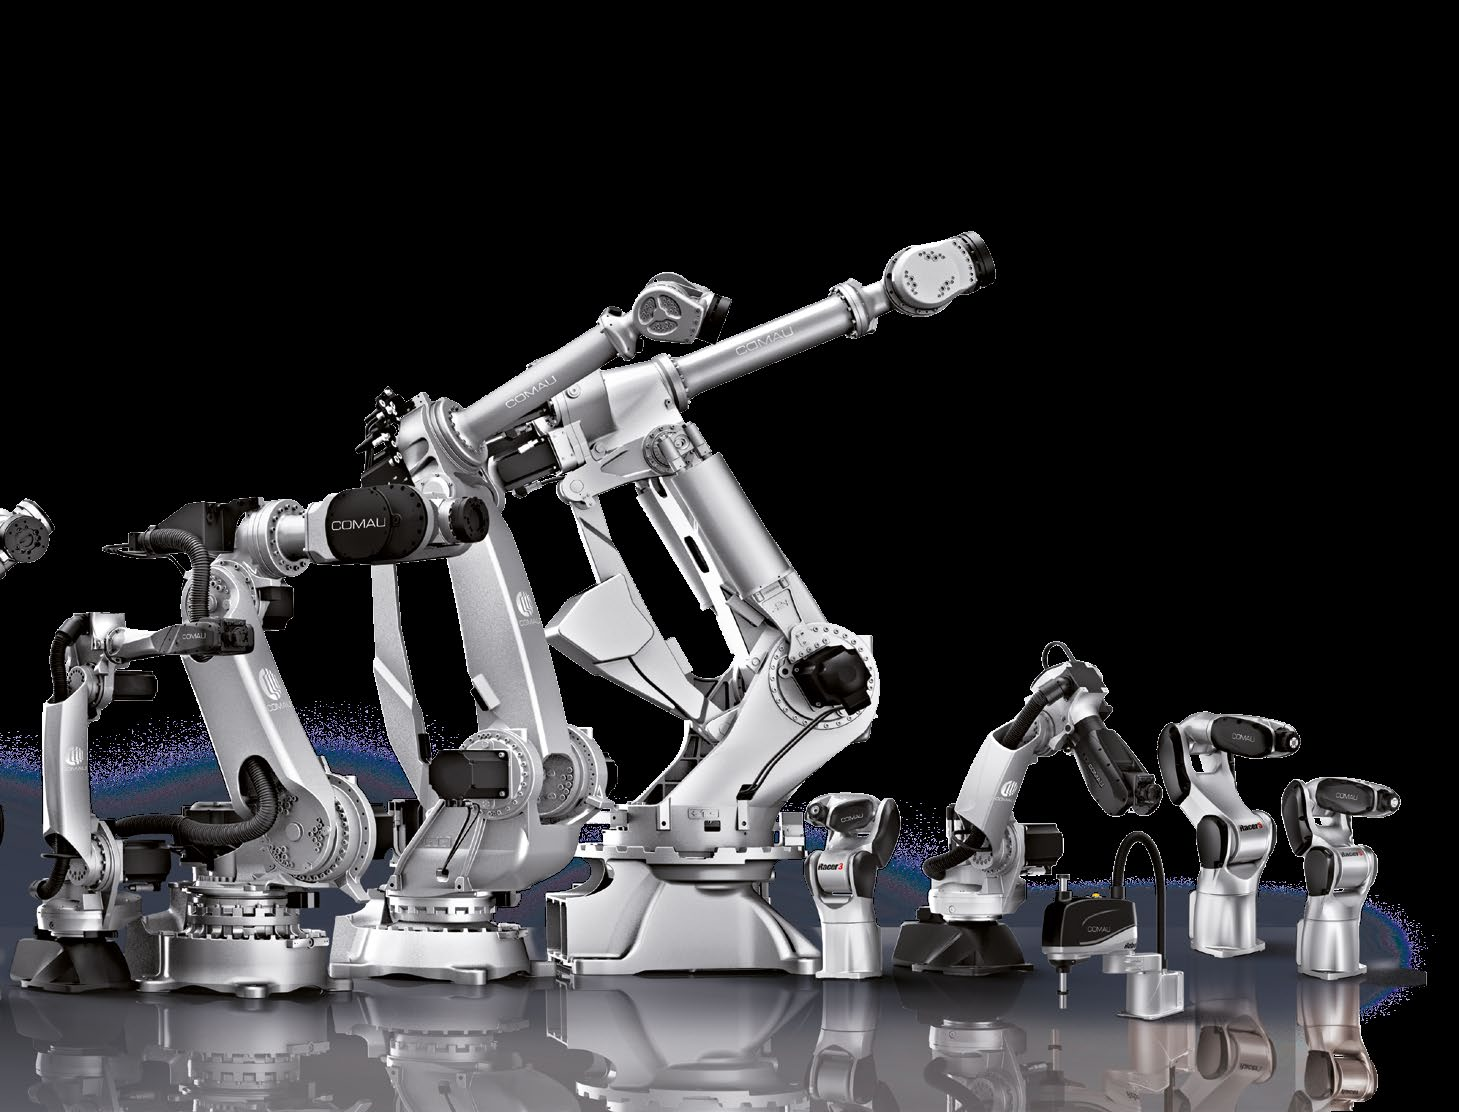 All unsere Roboter überzeugen durch Höchstleistungen in puncto Geschwindigkeit, Wiederholgenauigkeit, Präzision